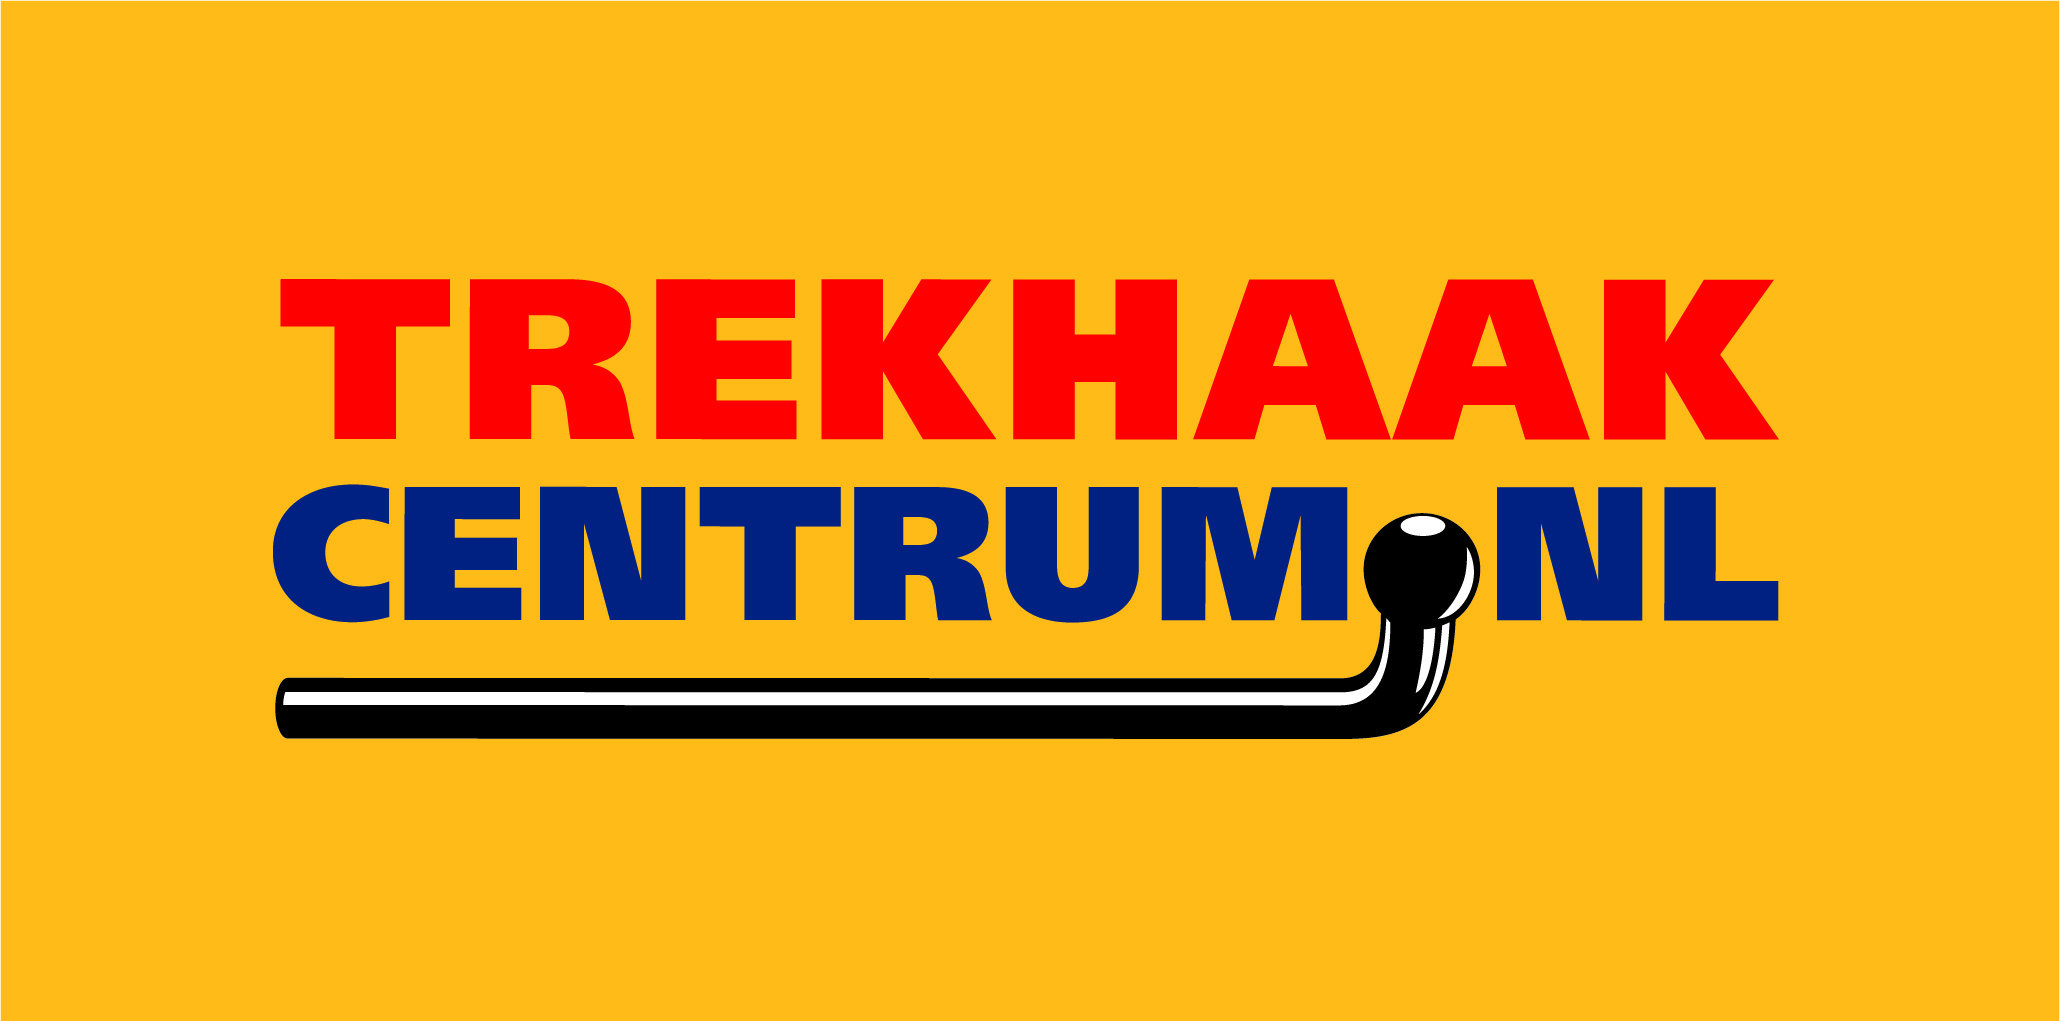 Trekhaakcentrum_Logo_CMYK